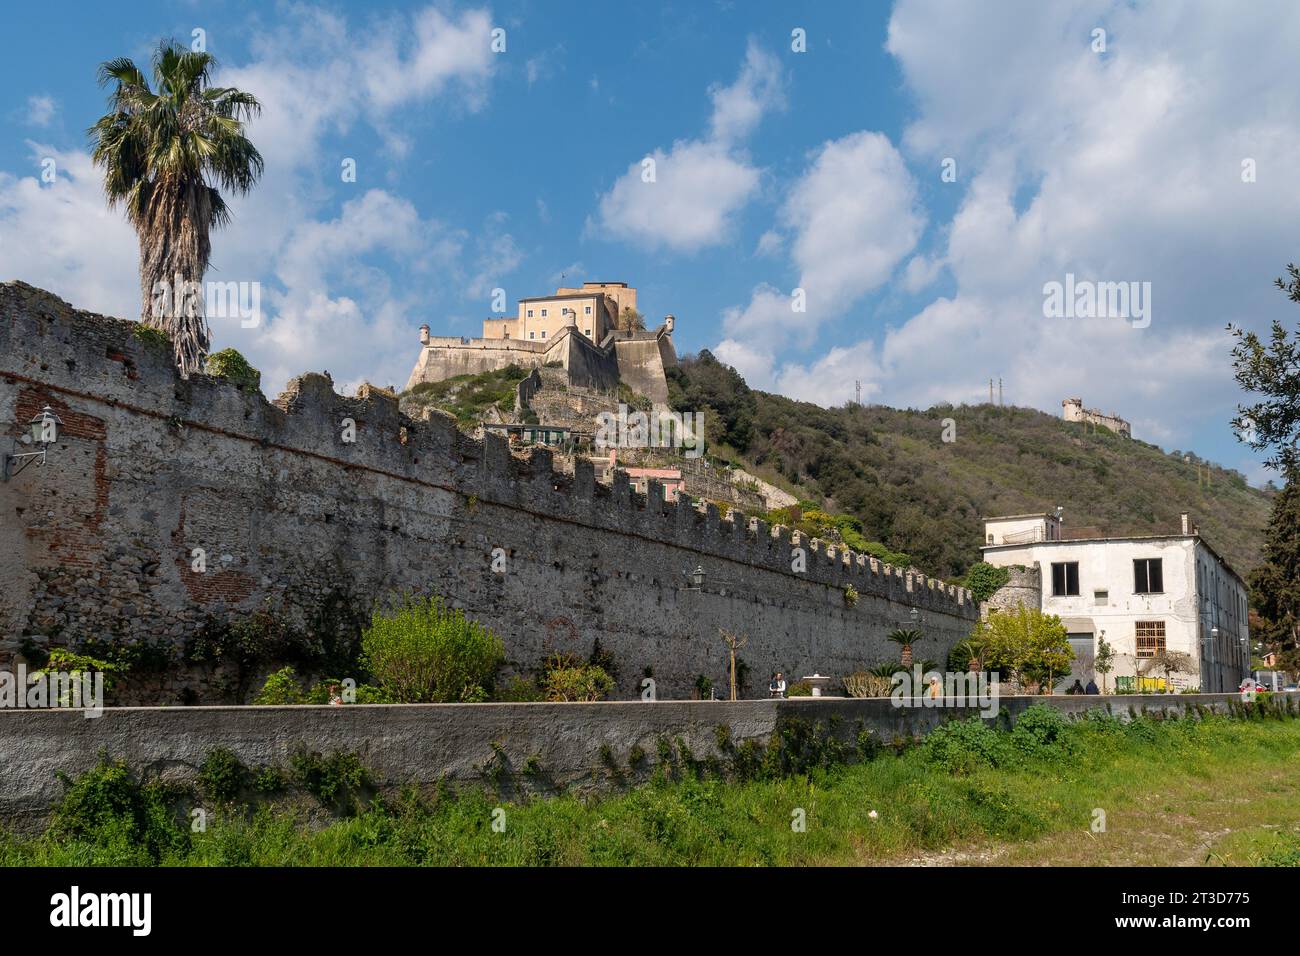 Das mittelalterliche Dorf mit den Mauern mit Zinnen, Forte San Giovanni und Castel Gavone auf dem Hügel, Finalborgo, Finale Ligure, Savona, Ligurien, Italien Stockfoto